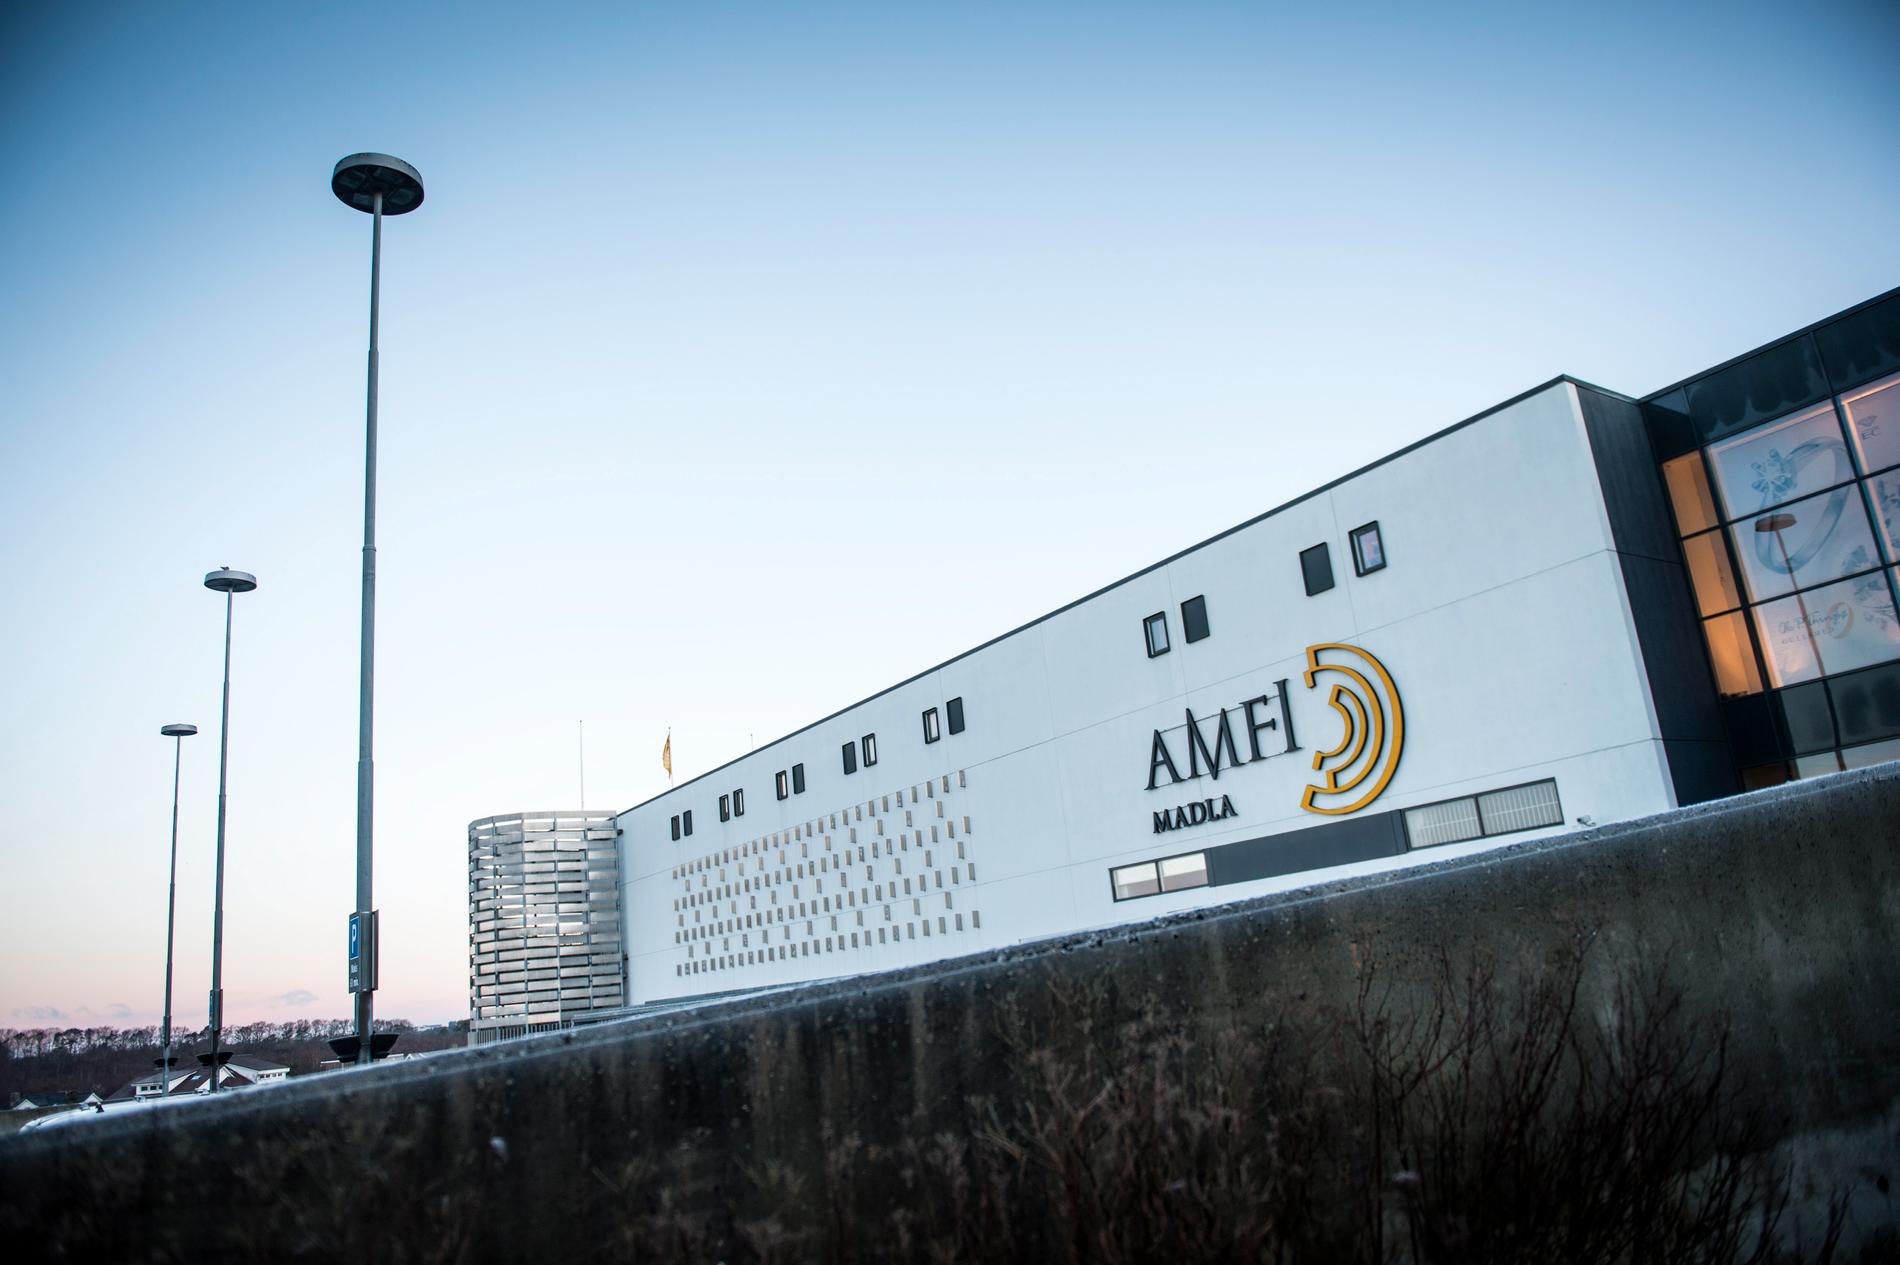 Olav Thon Gruppen eier nærmere 100 kjøpesentre over hele landet, deriblant Amfi-kjeden. Her ved Amfi Madla. 